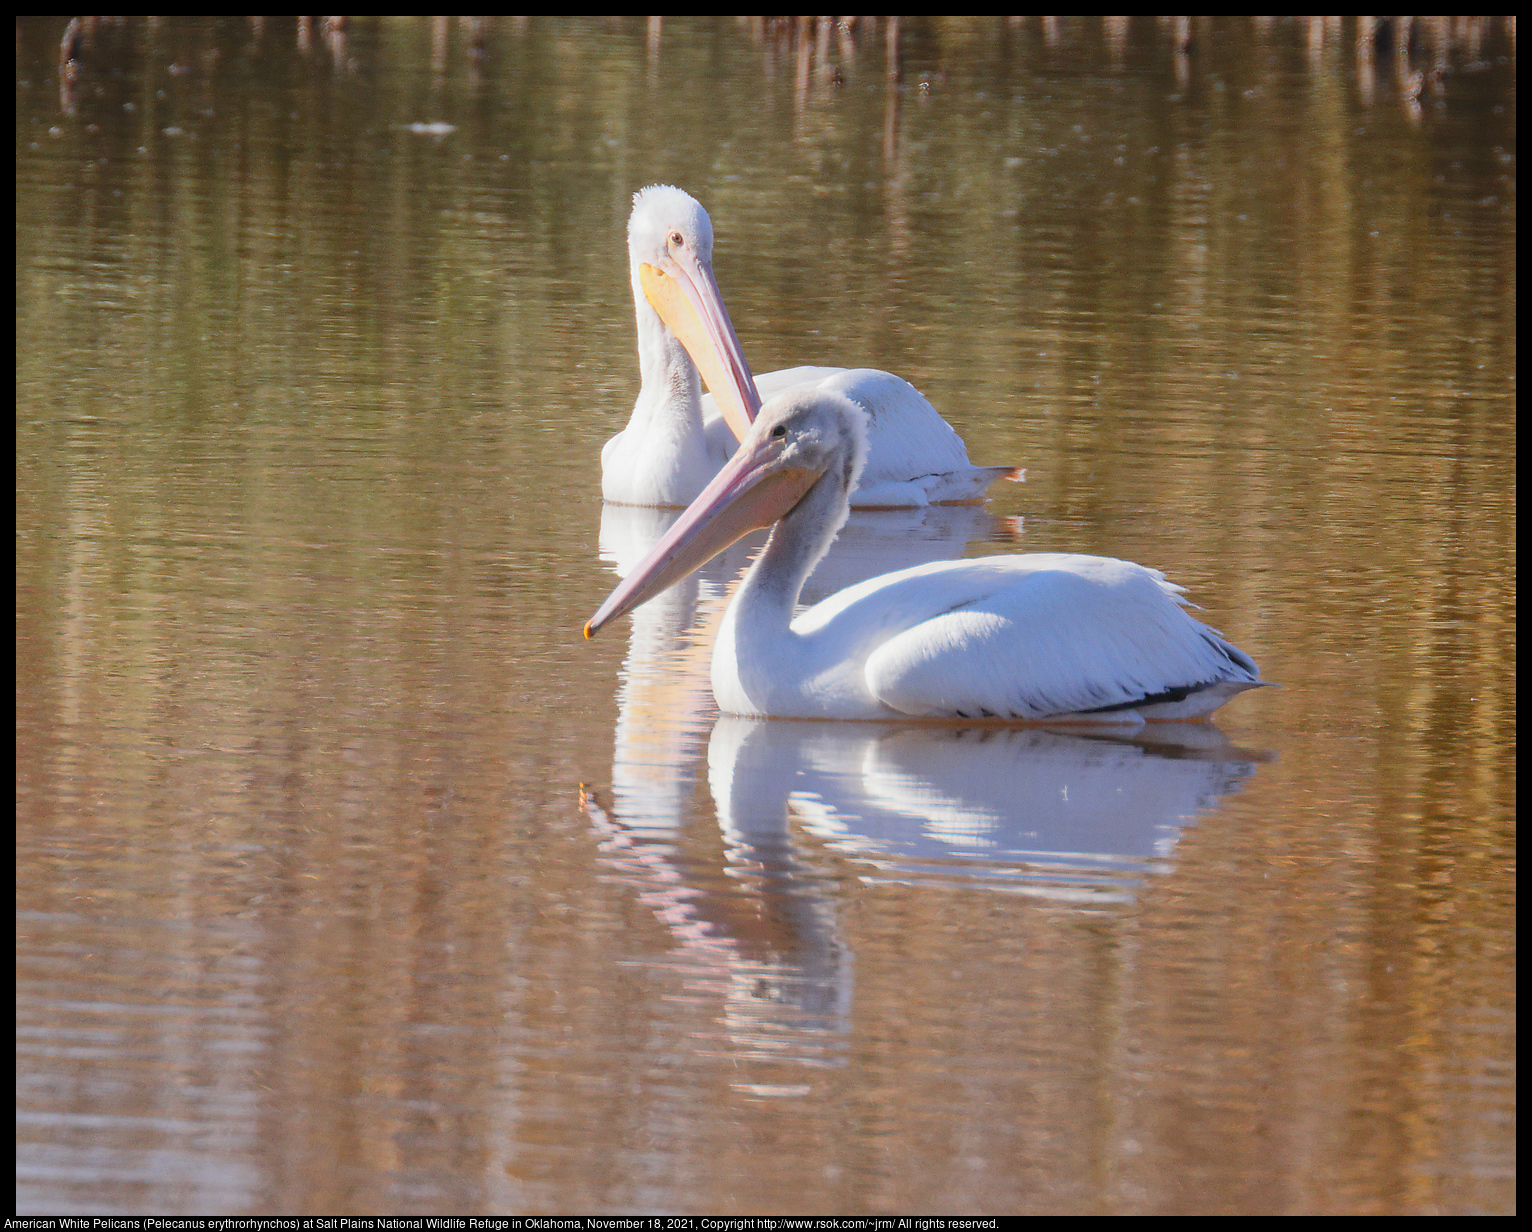 American White Pelicans (Pelecanus erythrorhynchos) at Salt Plains National Wildlife Refuge in Oklahoma, November 18, 2021